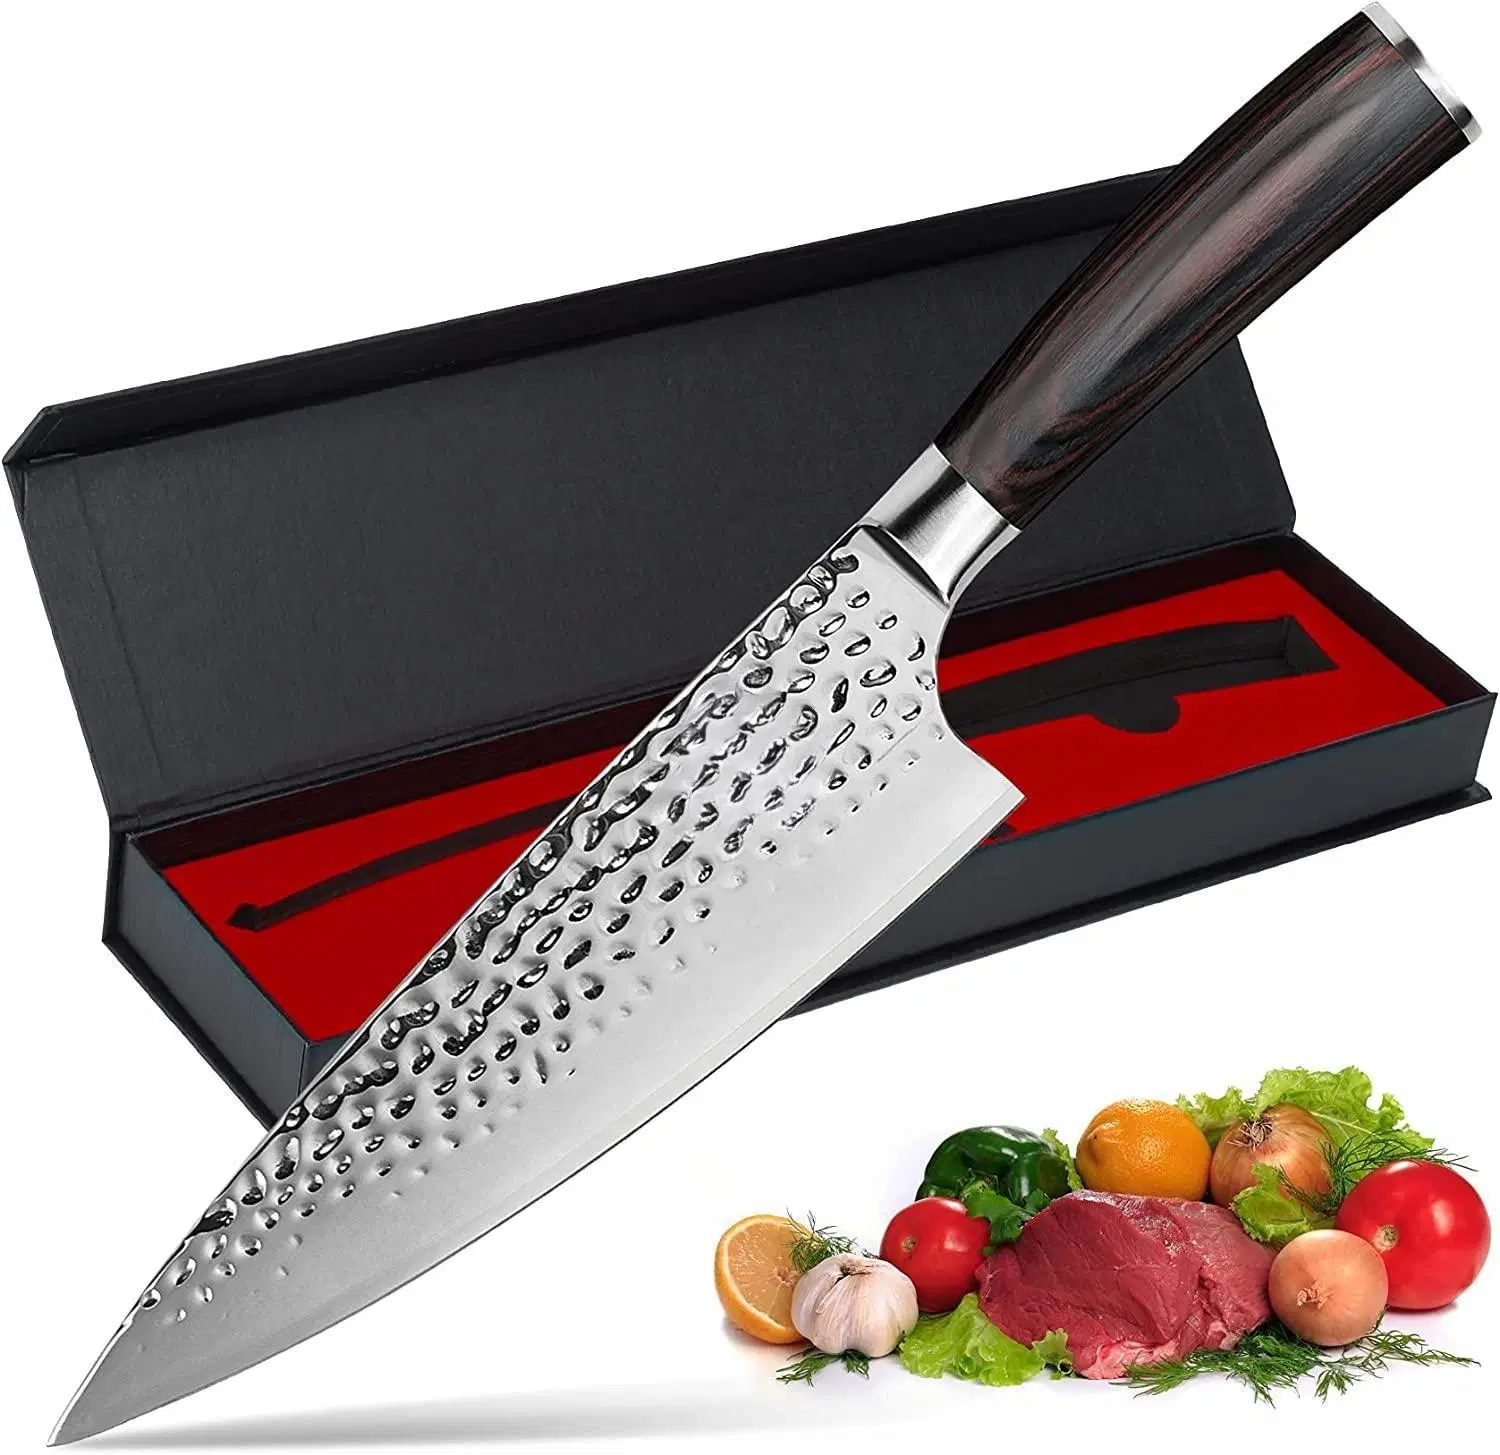 Couteau de cuisine japonais premium en acier inoxydable tranchant de 8 pouces avec lame en damas.